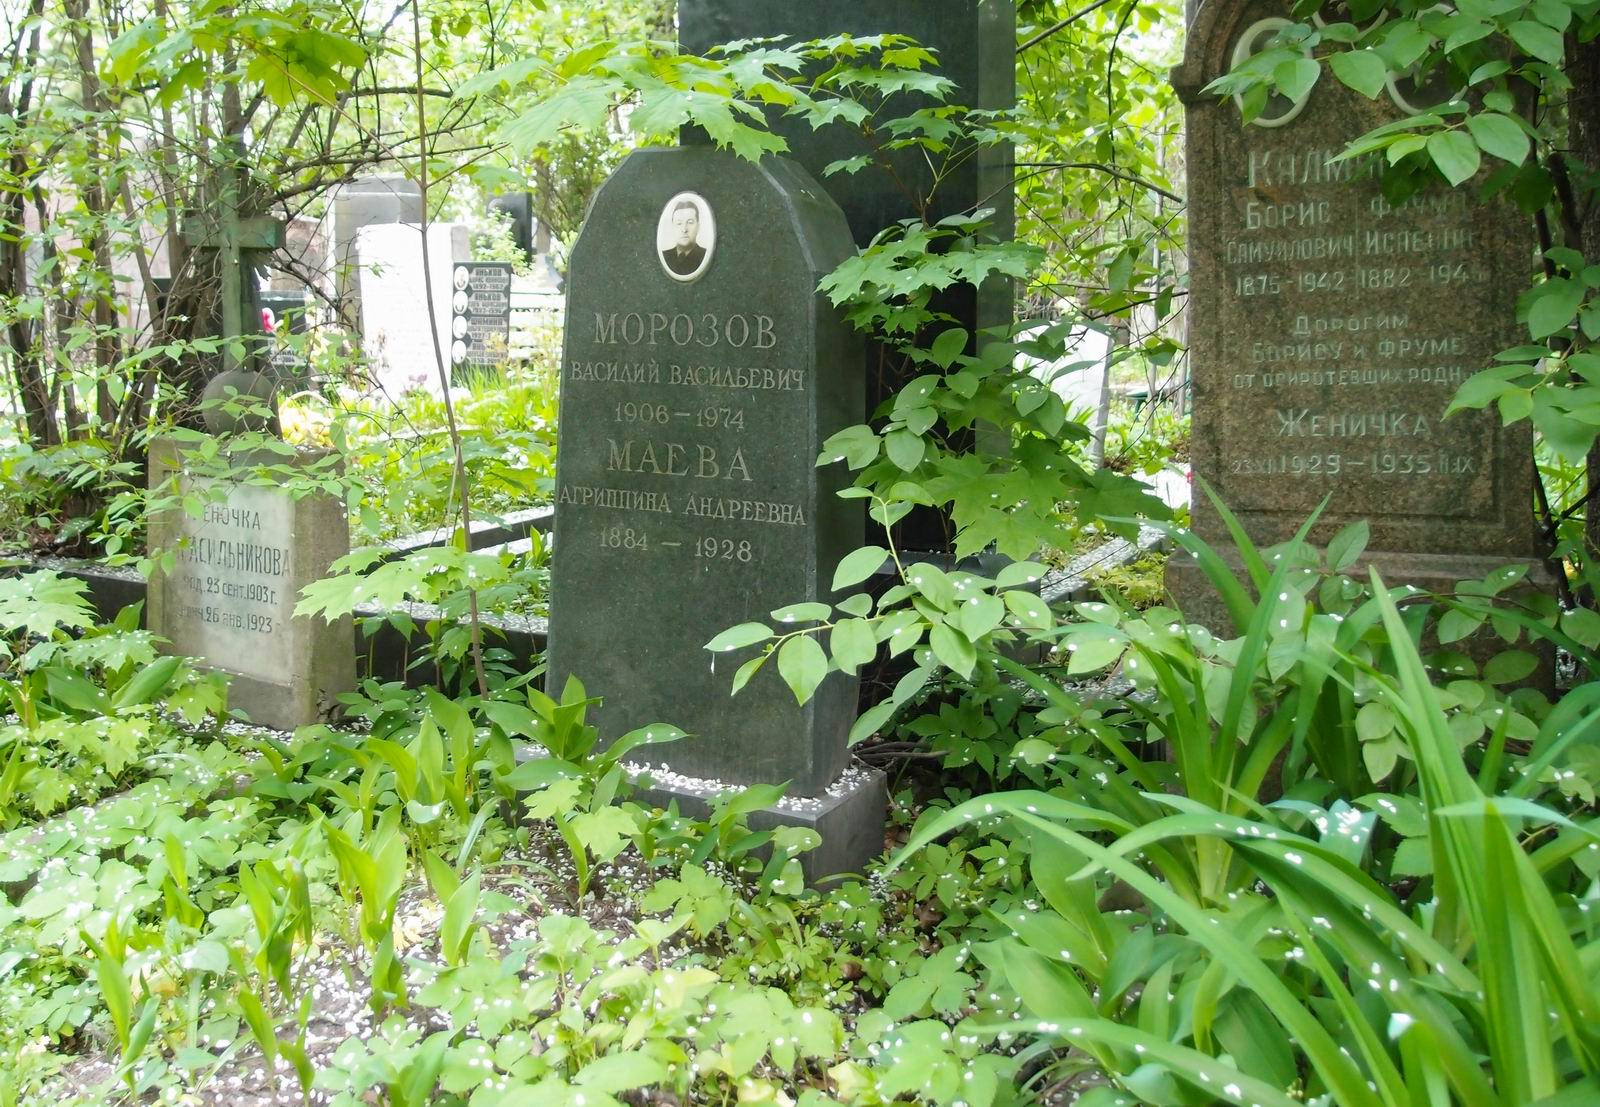 Памятник на могиле Маевой А.А. (1884-1928), на Новодевичьем кладбище (3-48-6).